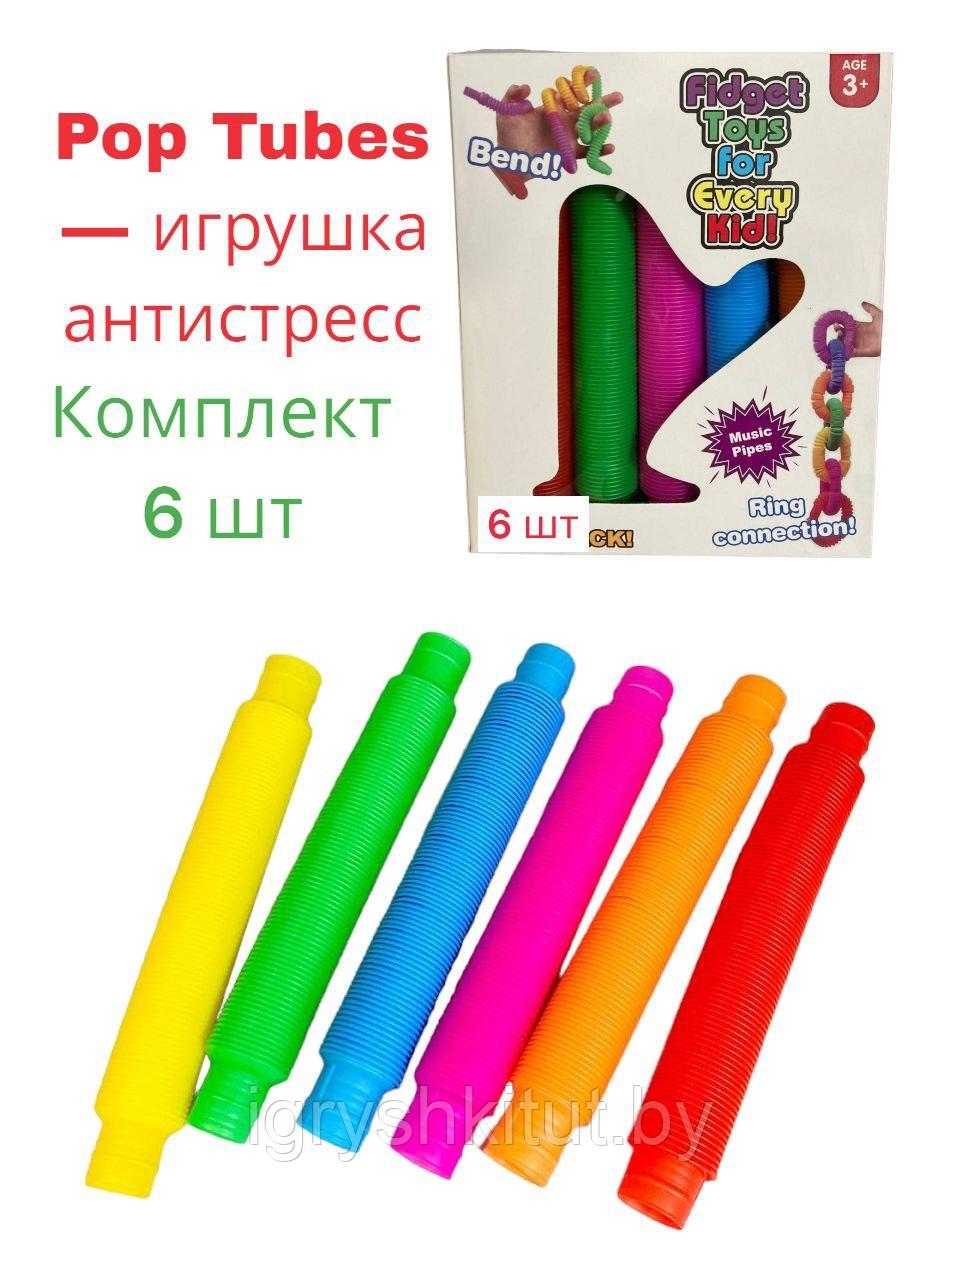 Набор Антистресс Трубочек Pop Tubes, 6 шт (20 см)